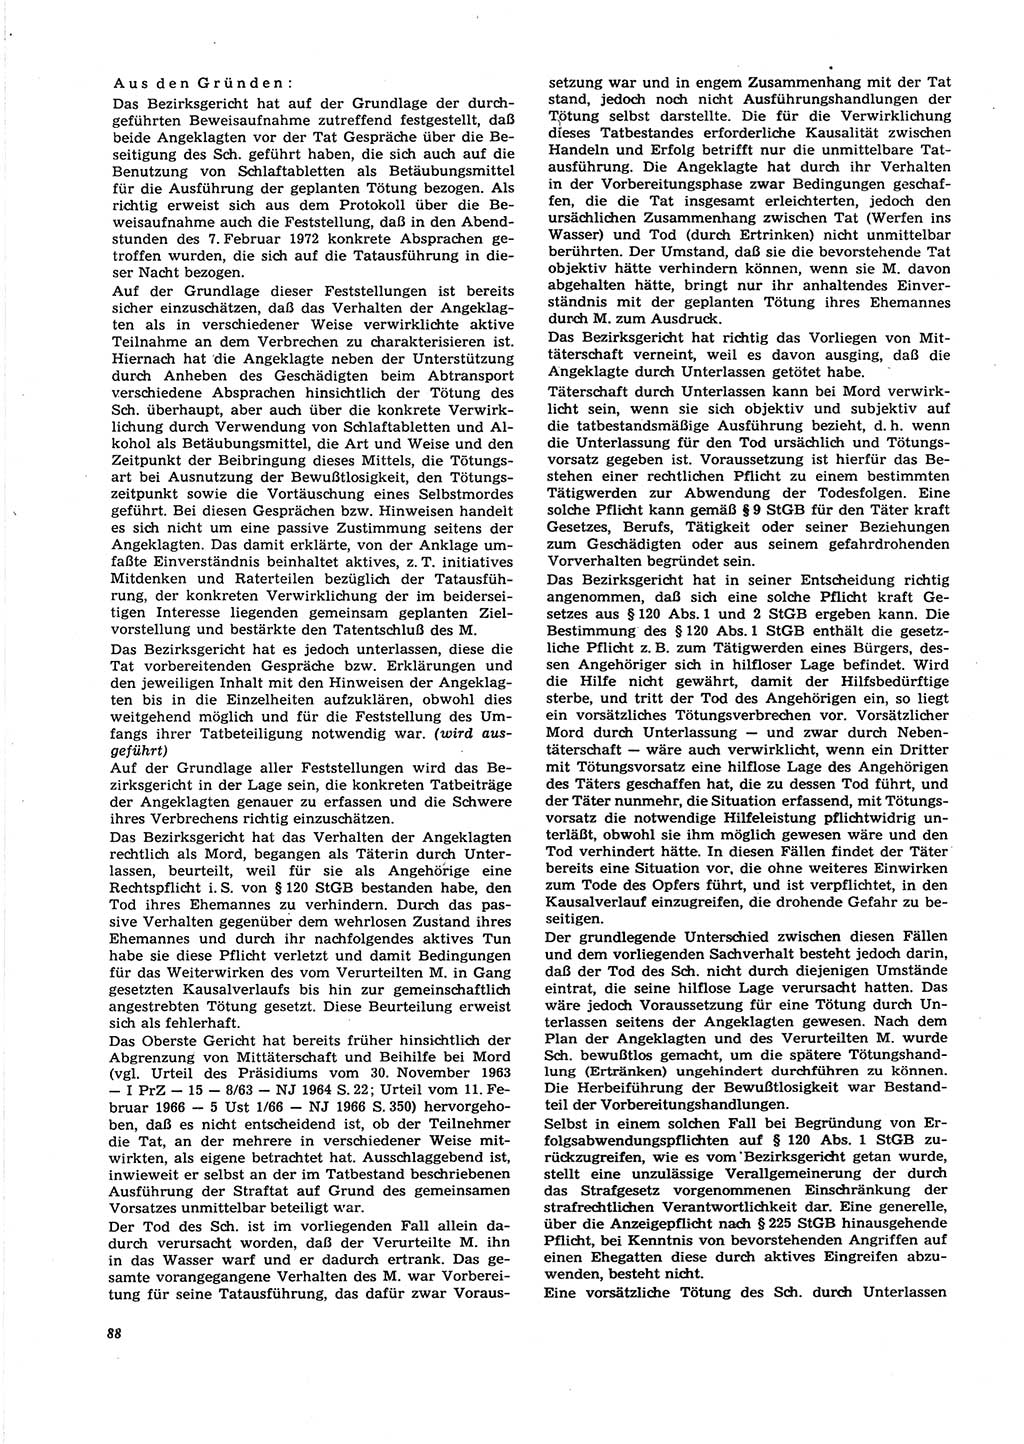 Neue Justiz (NJ), Zeitschrift für Recht und Rechtswissenschaft [Deutsche Demokratische Republik (DDR)], 27. Jahrgang 1973, Seite 88 (NJ DDR 1973, S. 88)